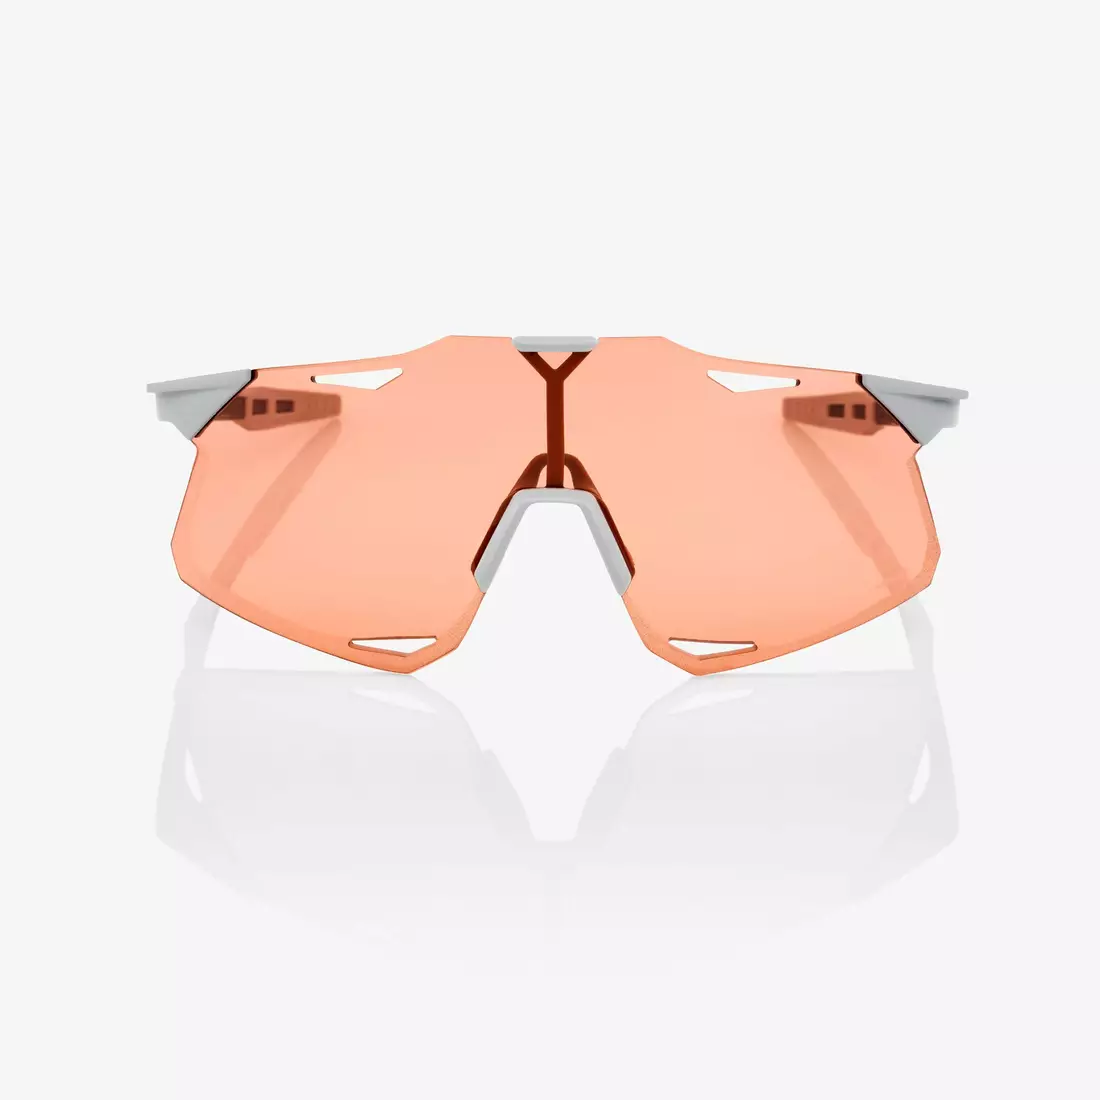 100% sportovní brýle hypercraft matte stone grey HiPER coral lens + clear lens STO-61039-394-79